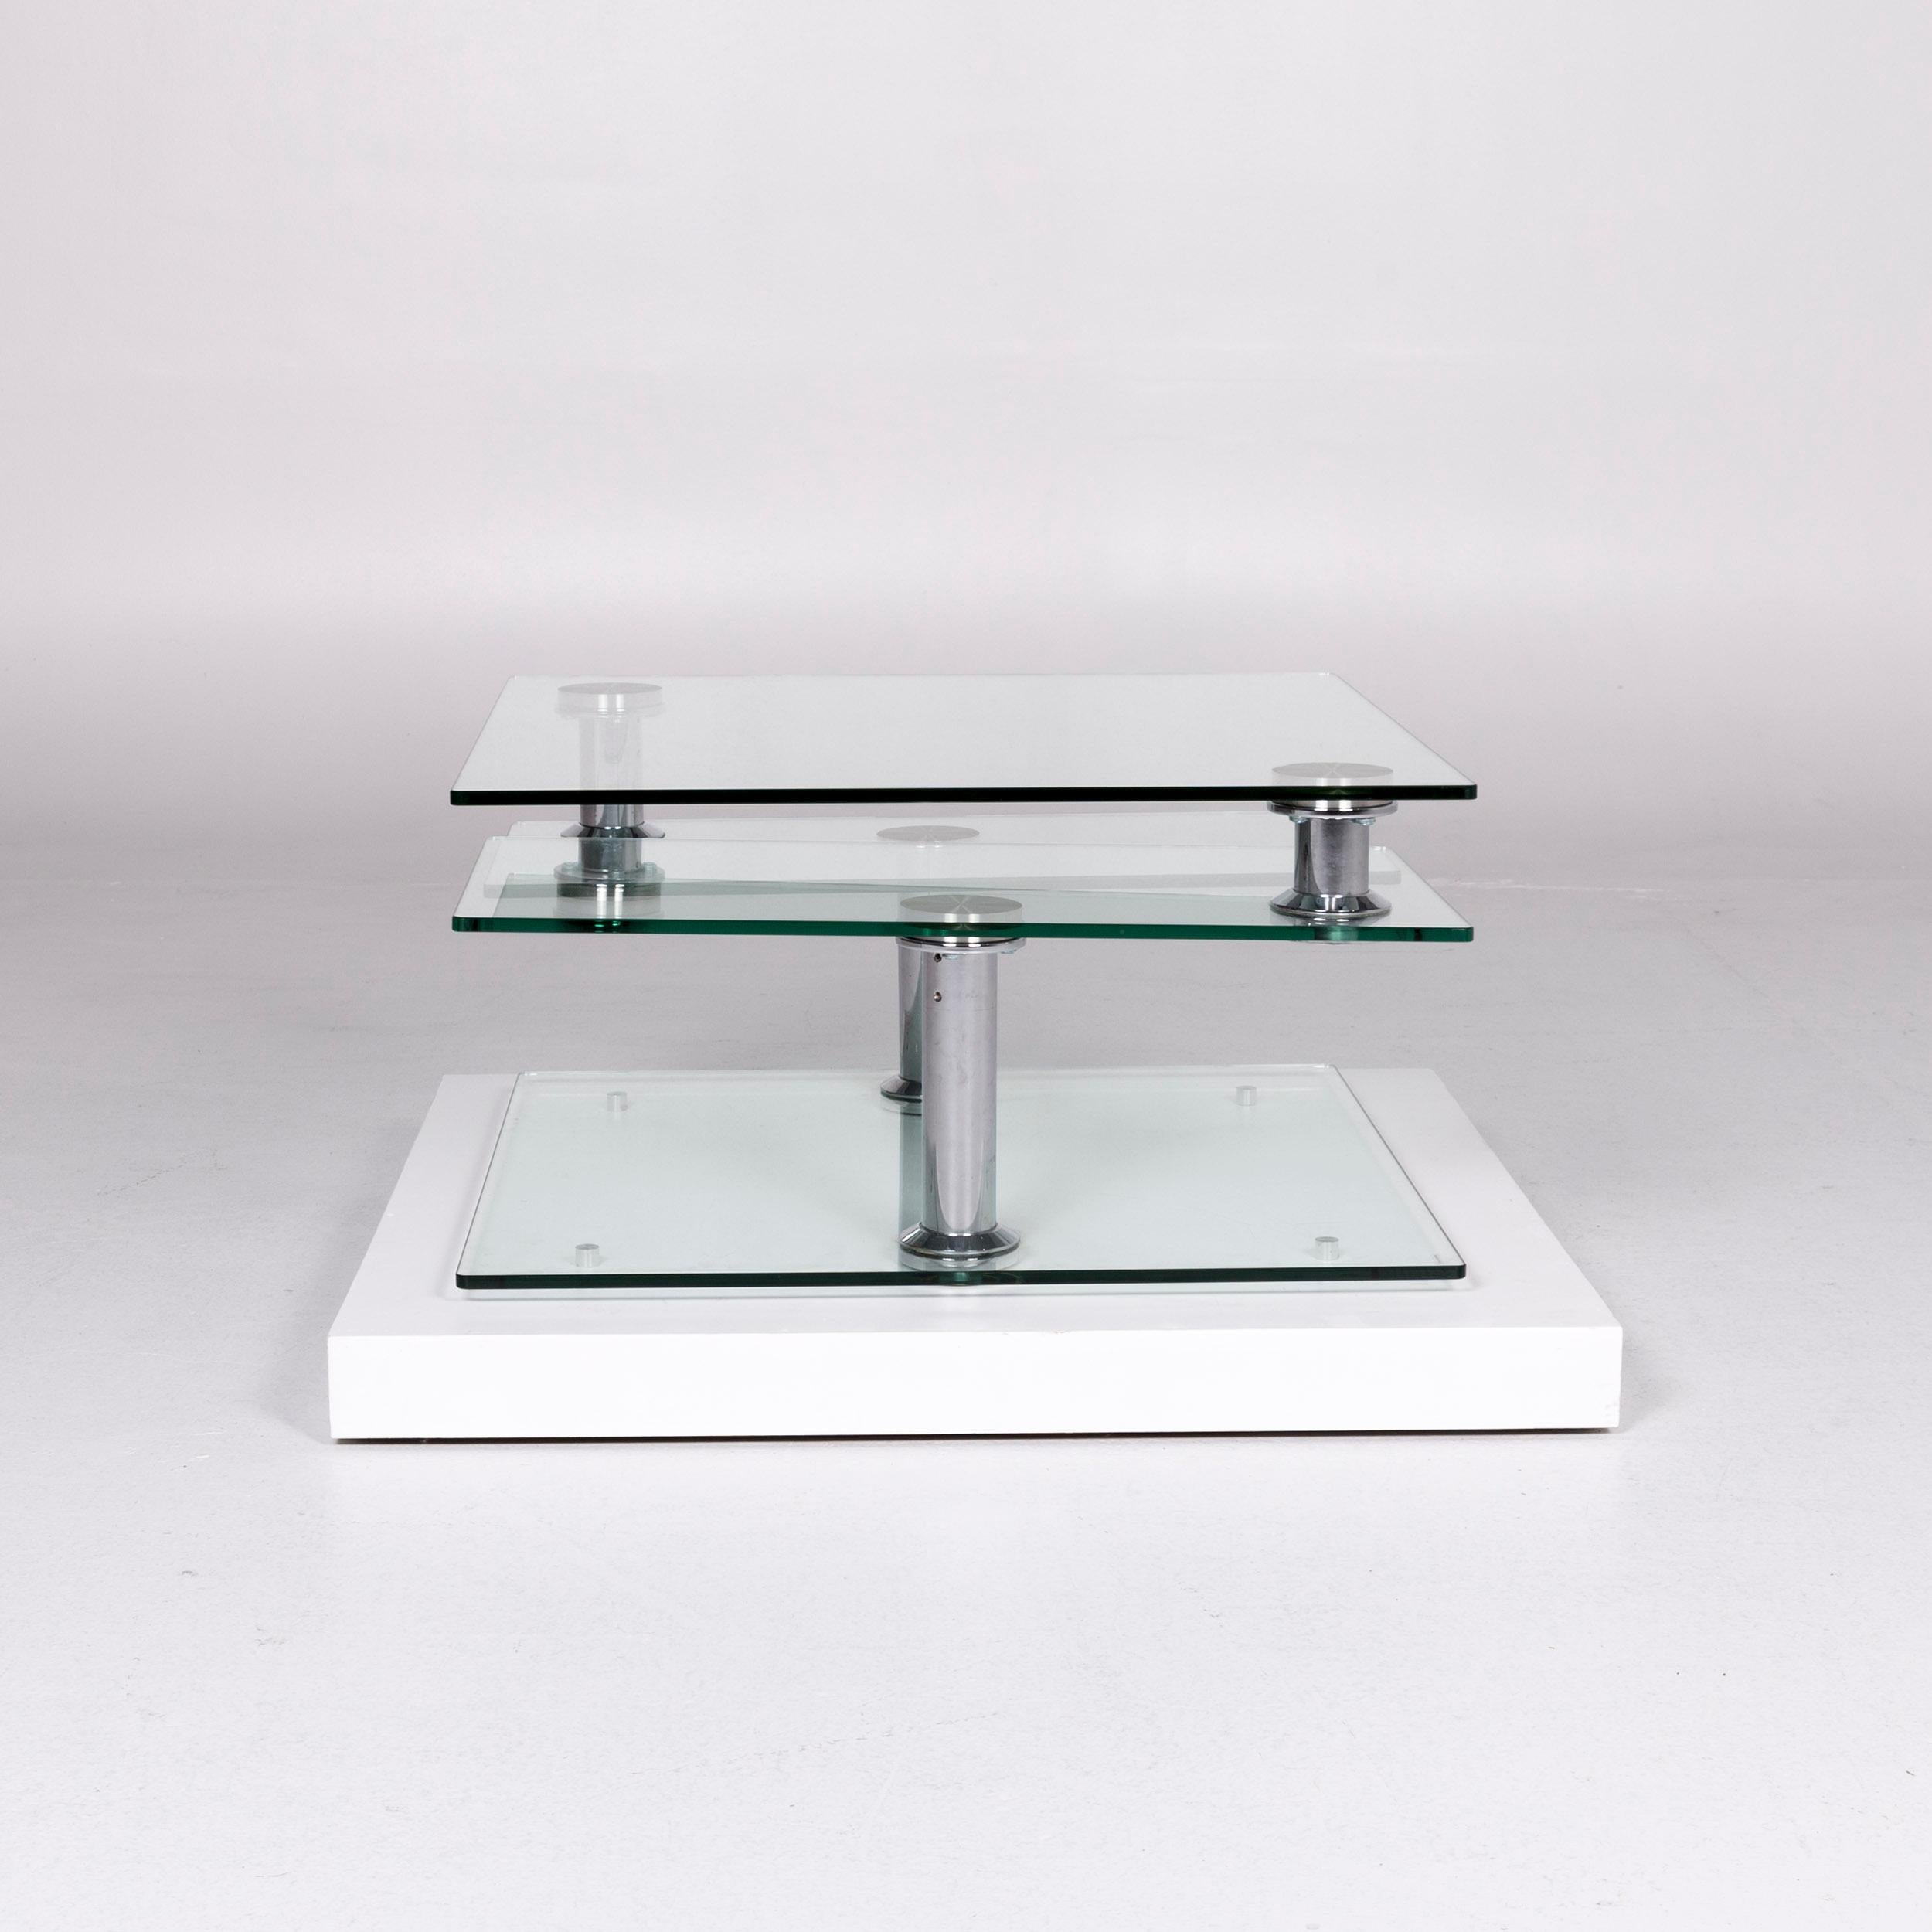 Hülsta Glass Couchtisch Silber Chrome Function Tisch 5